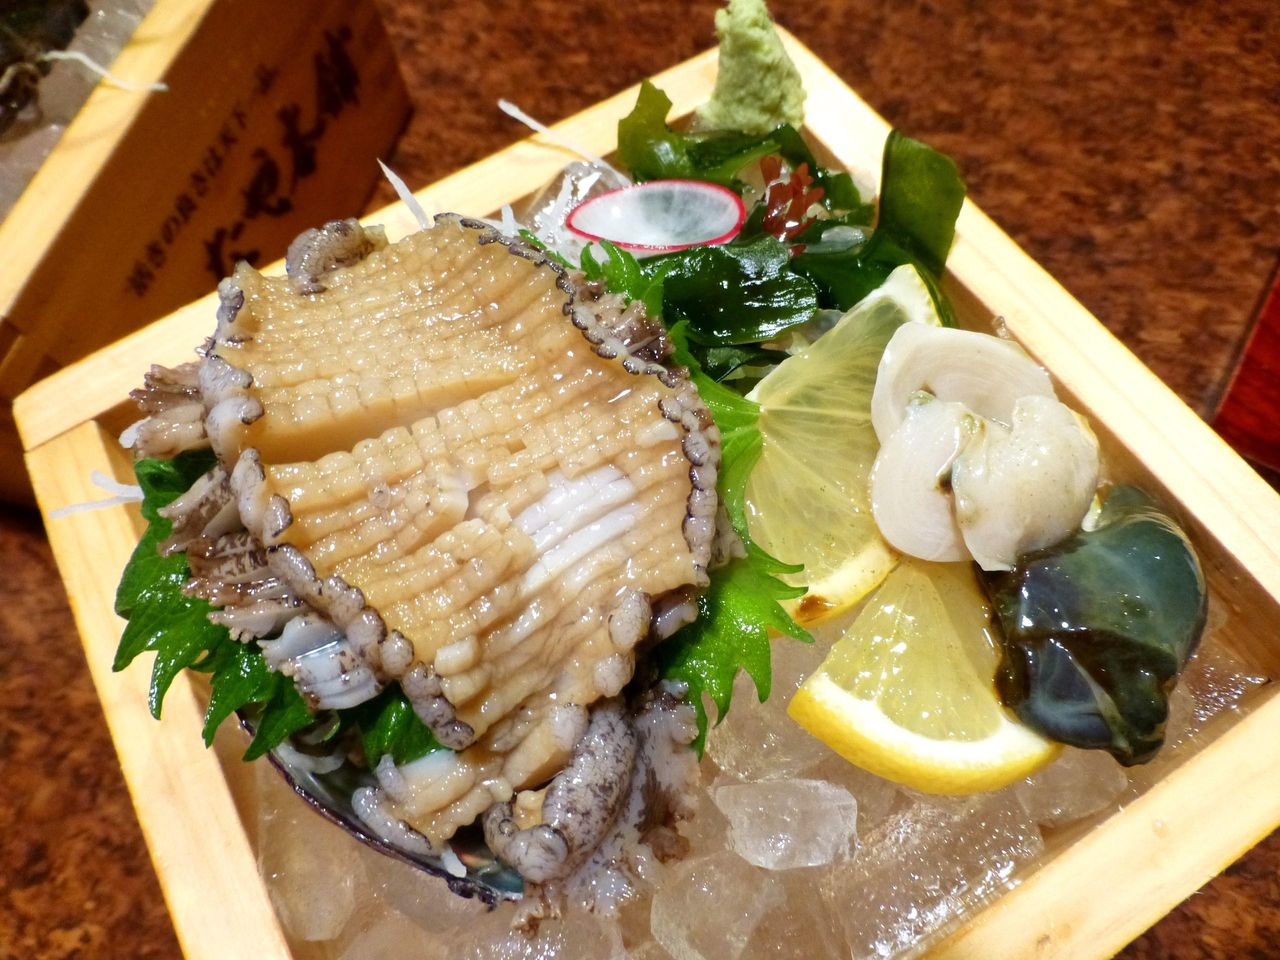 さかなや本舗 秋田の さかなや本舗 で 鮮度抜群の海産物と郷土料理 Gakudaiの週末はデカ盛り